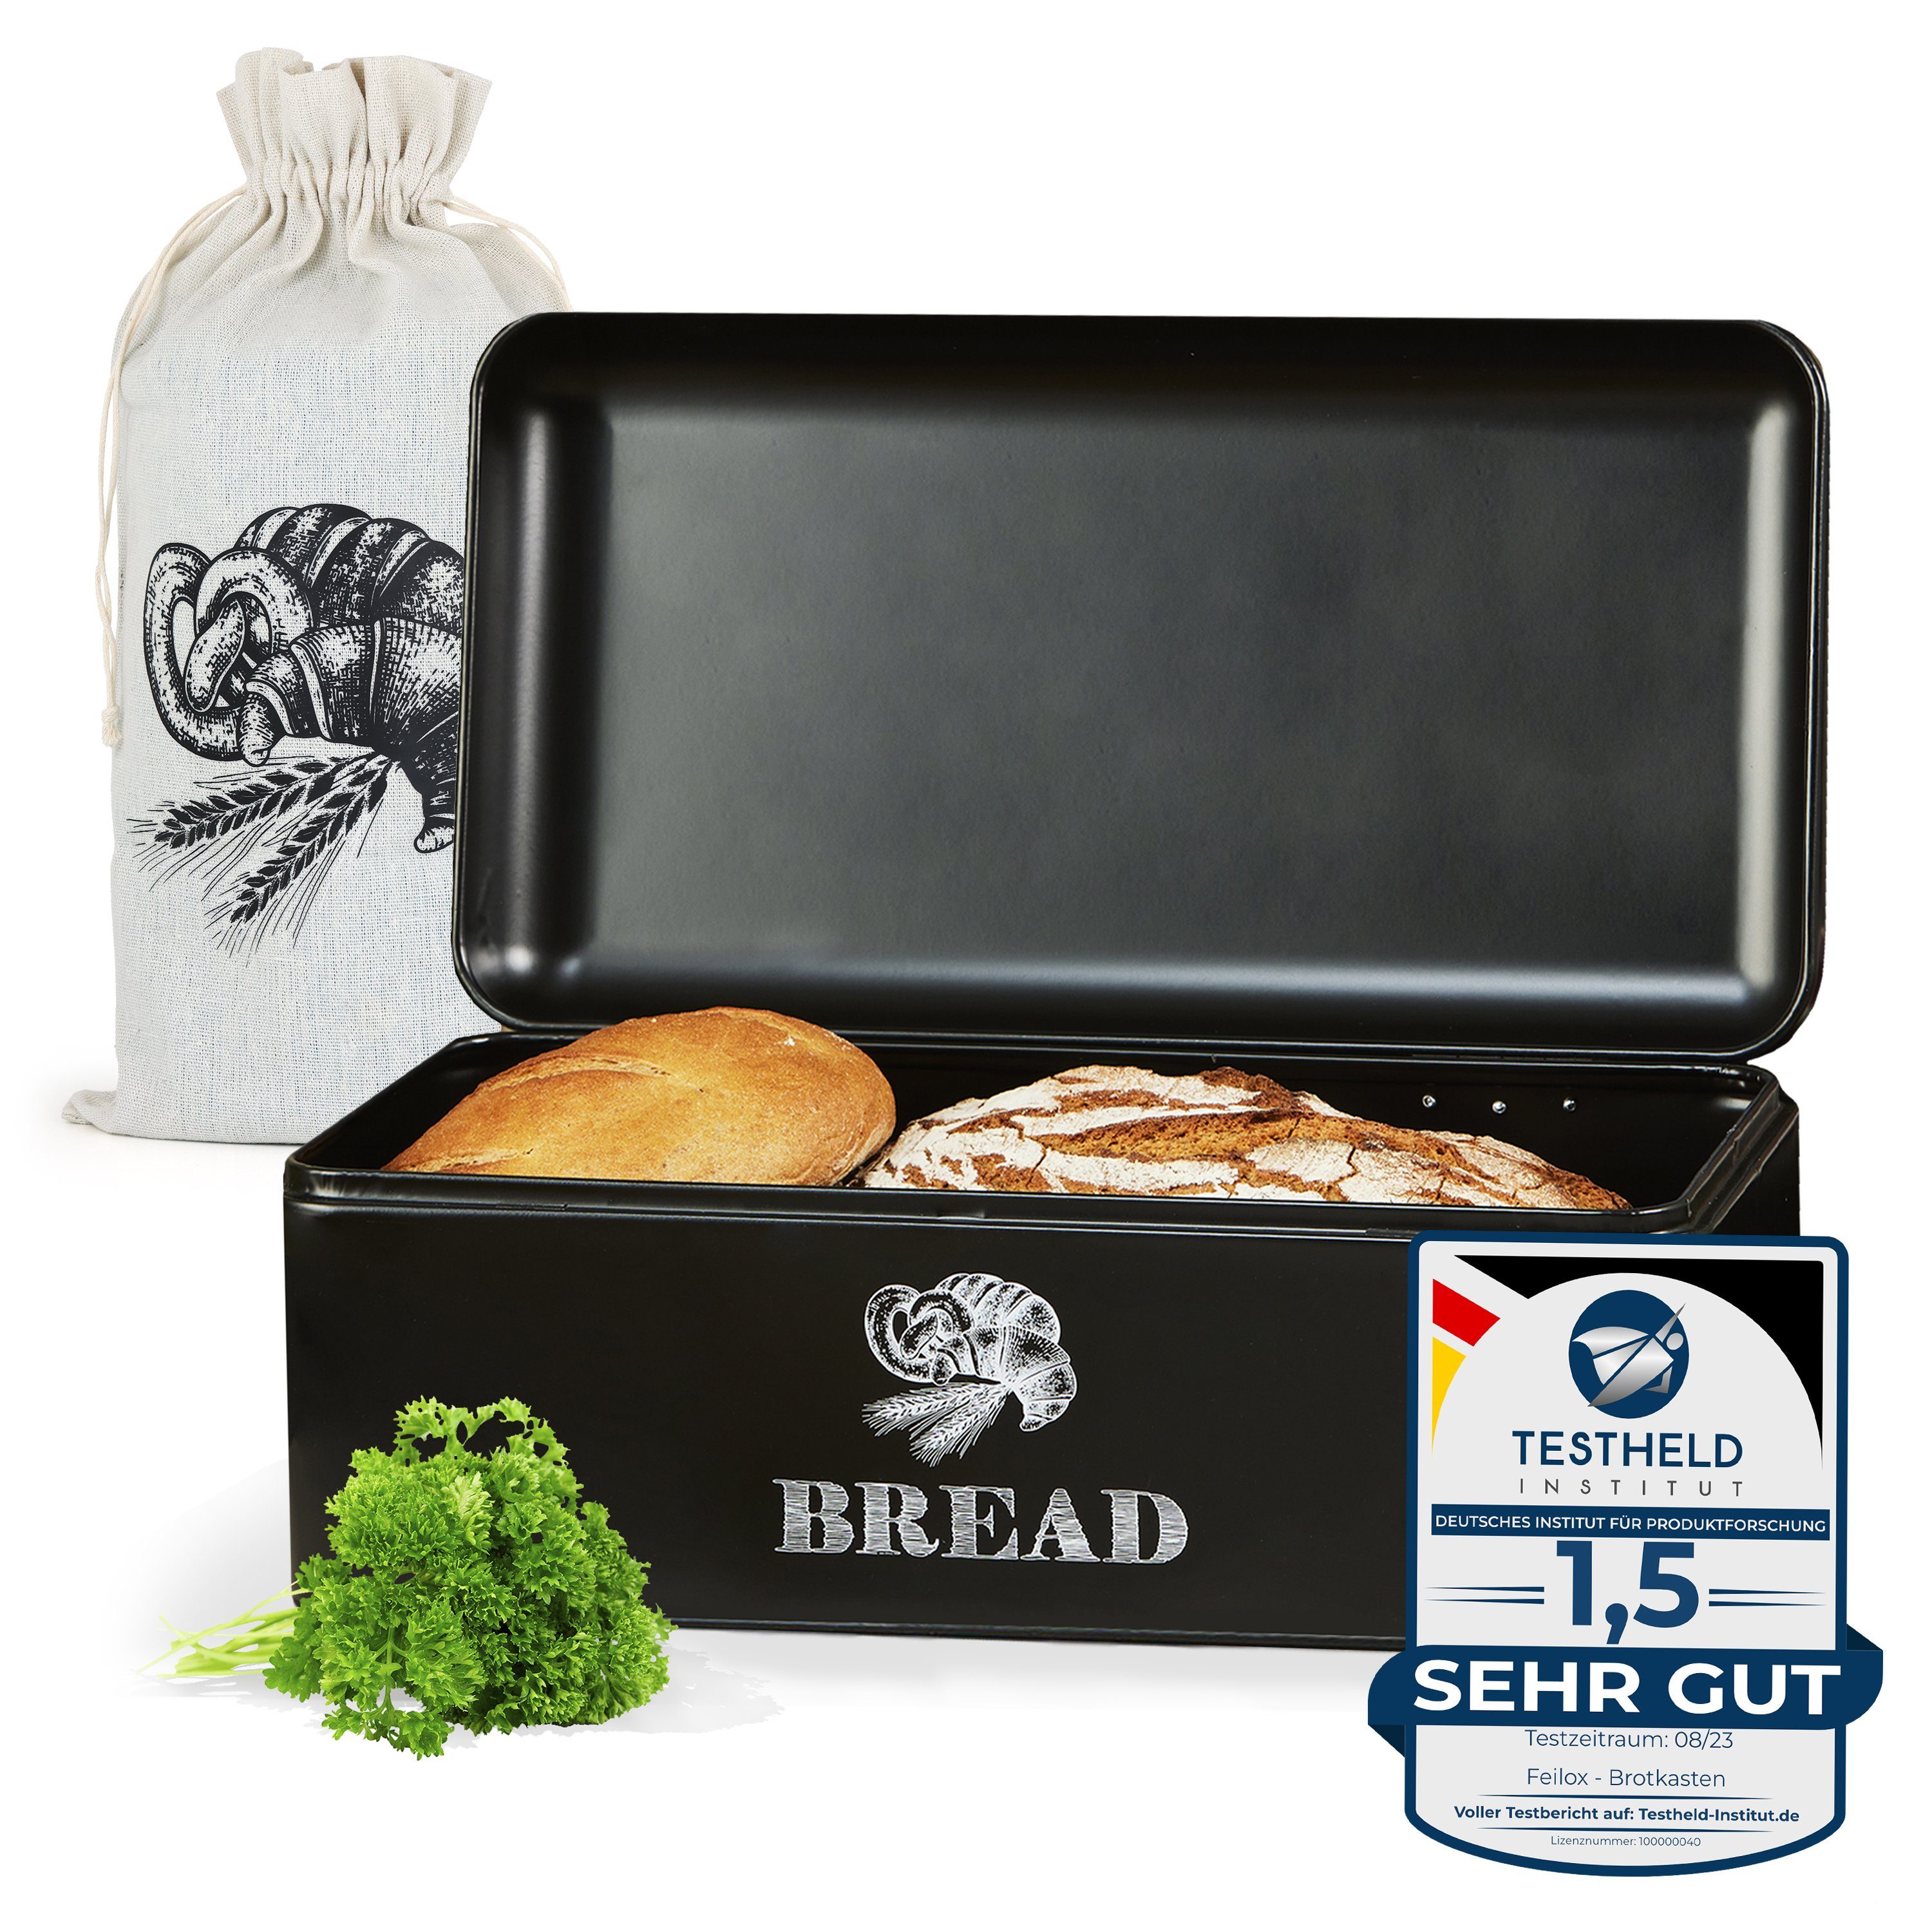 Feilox Brotkasten schwarz matt, groß (für 2-3 Brote), Retro Design, Edelstahl, Premium Qualität, inkl. Jutebeutel